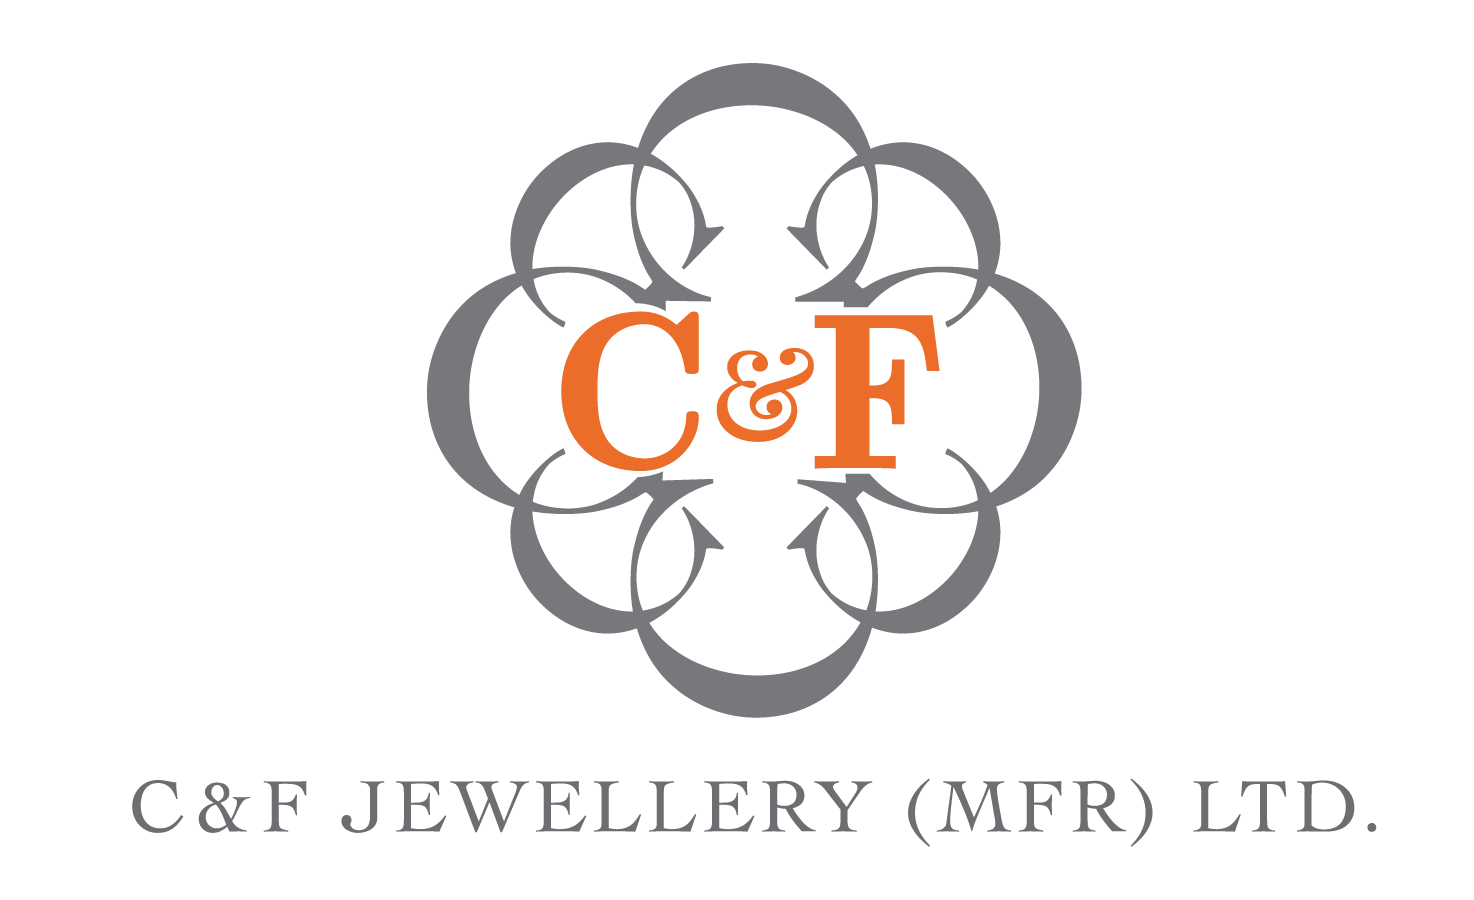 C&F Jewellery (MFR) Ltd.